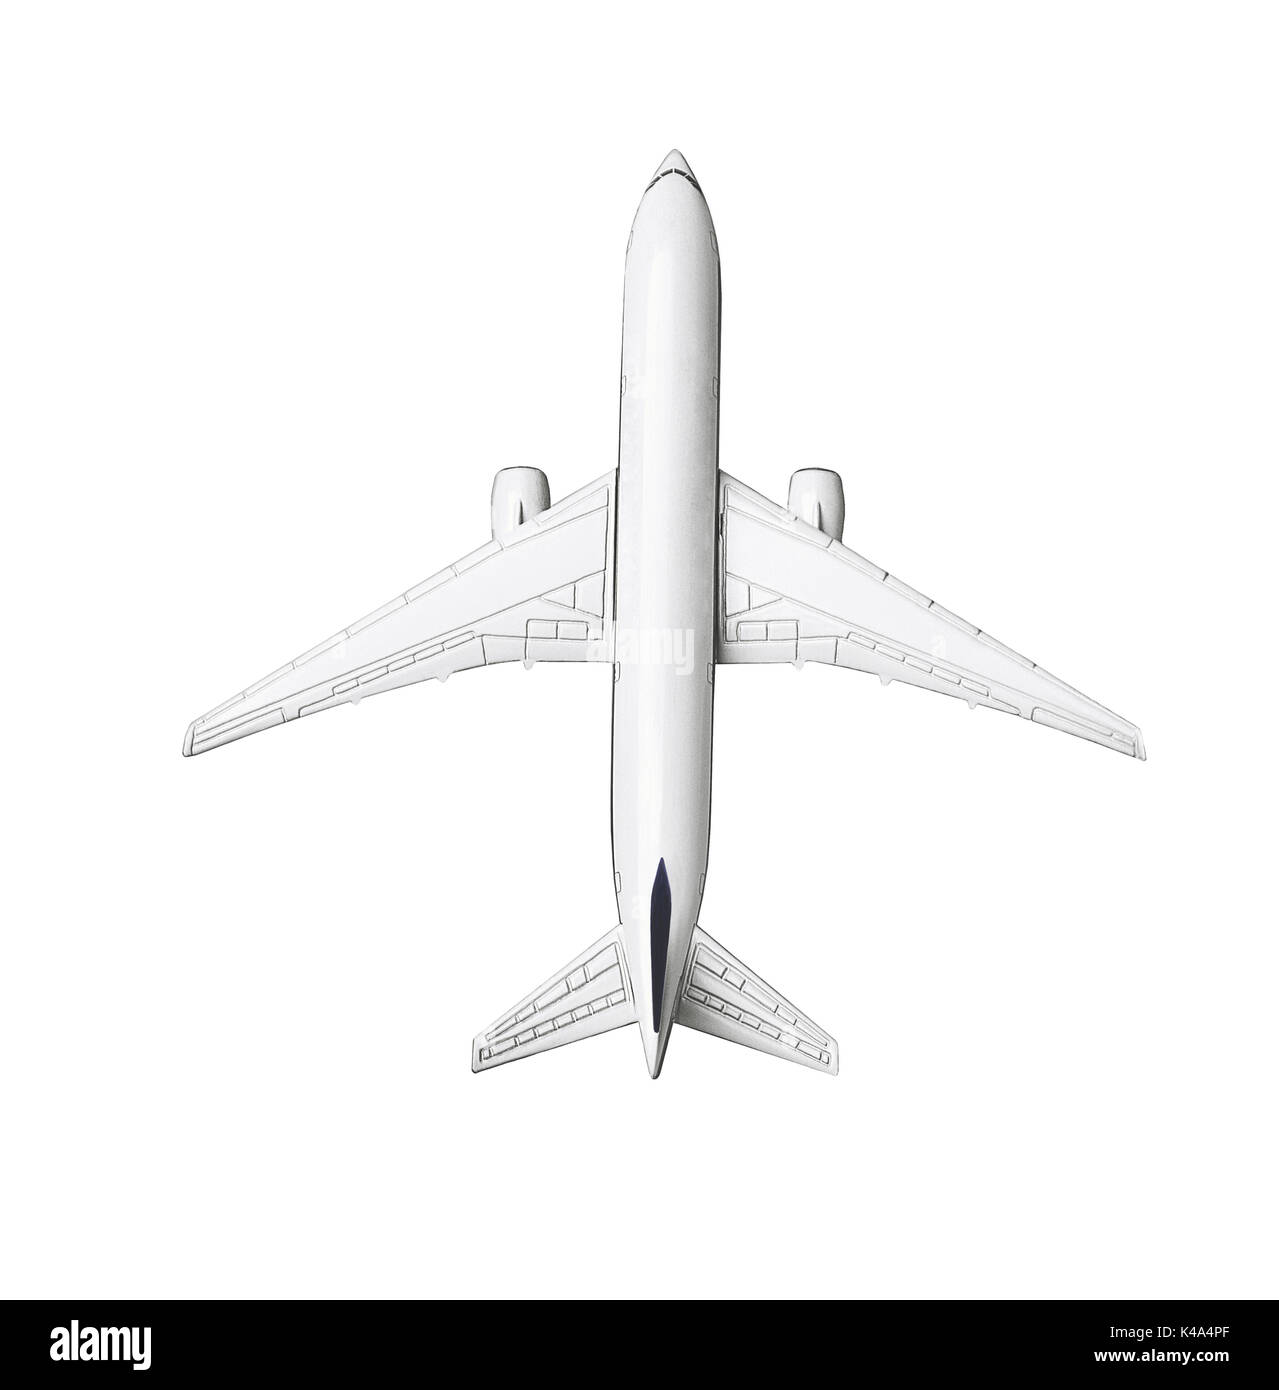 Miniatur Modell der kommerziellen Jetliner auf weißem Hintergrund Stockfoto